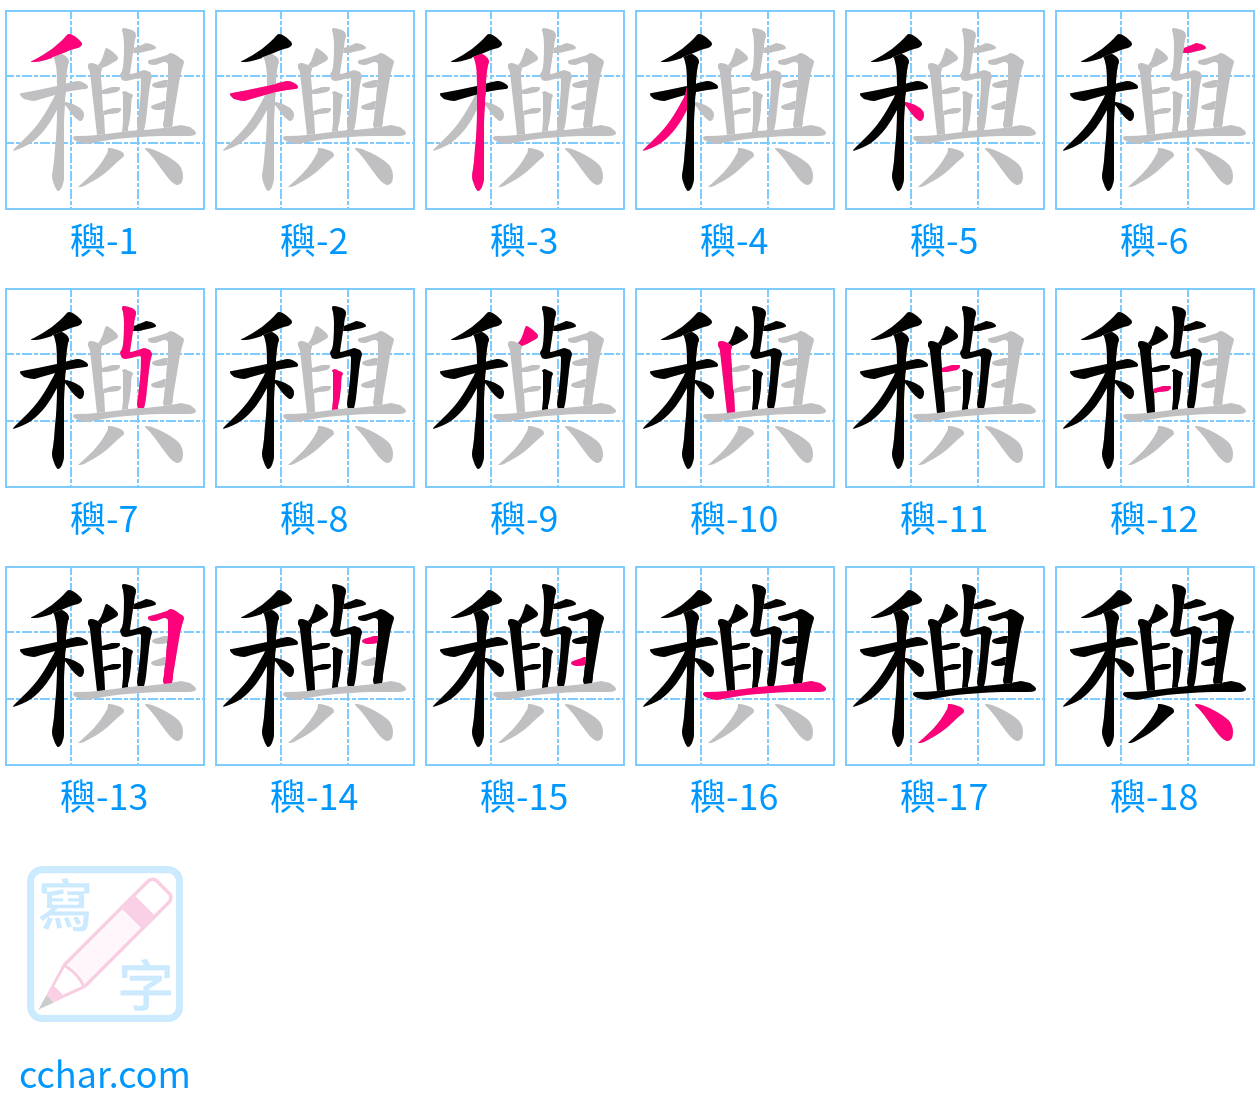 穥 stroke order step-by-step diagram